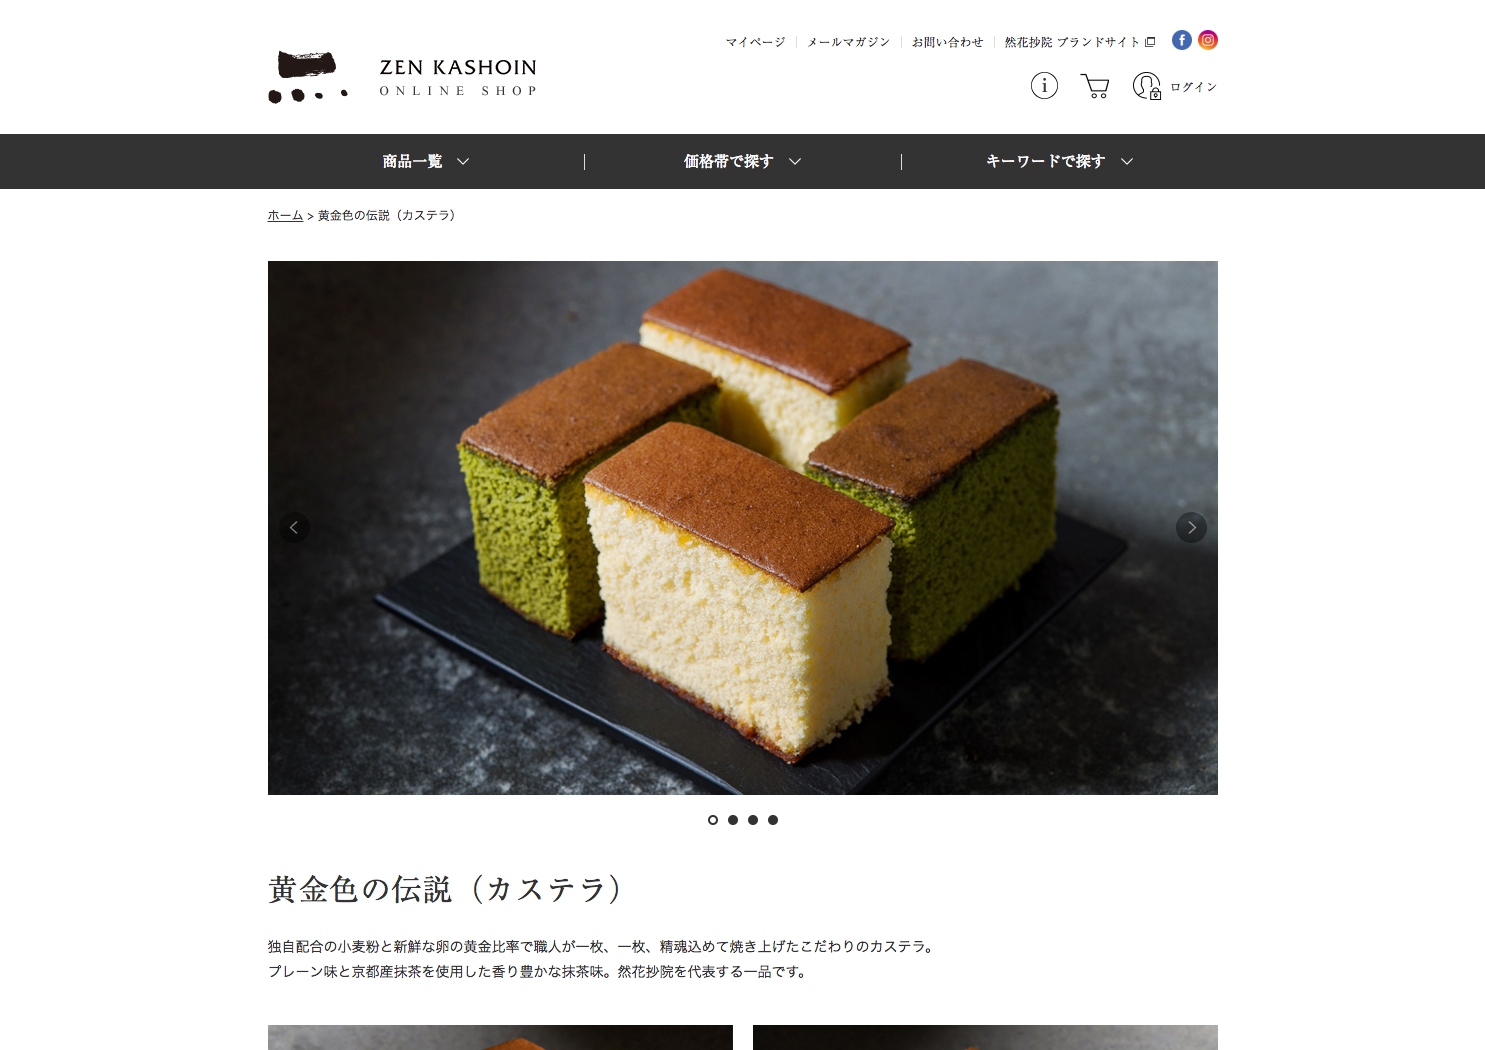 ZEN KASHOIN Official Online Shop 2018